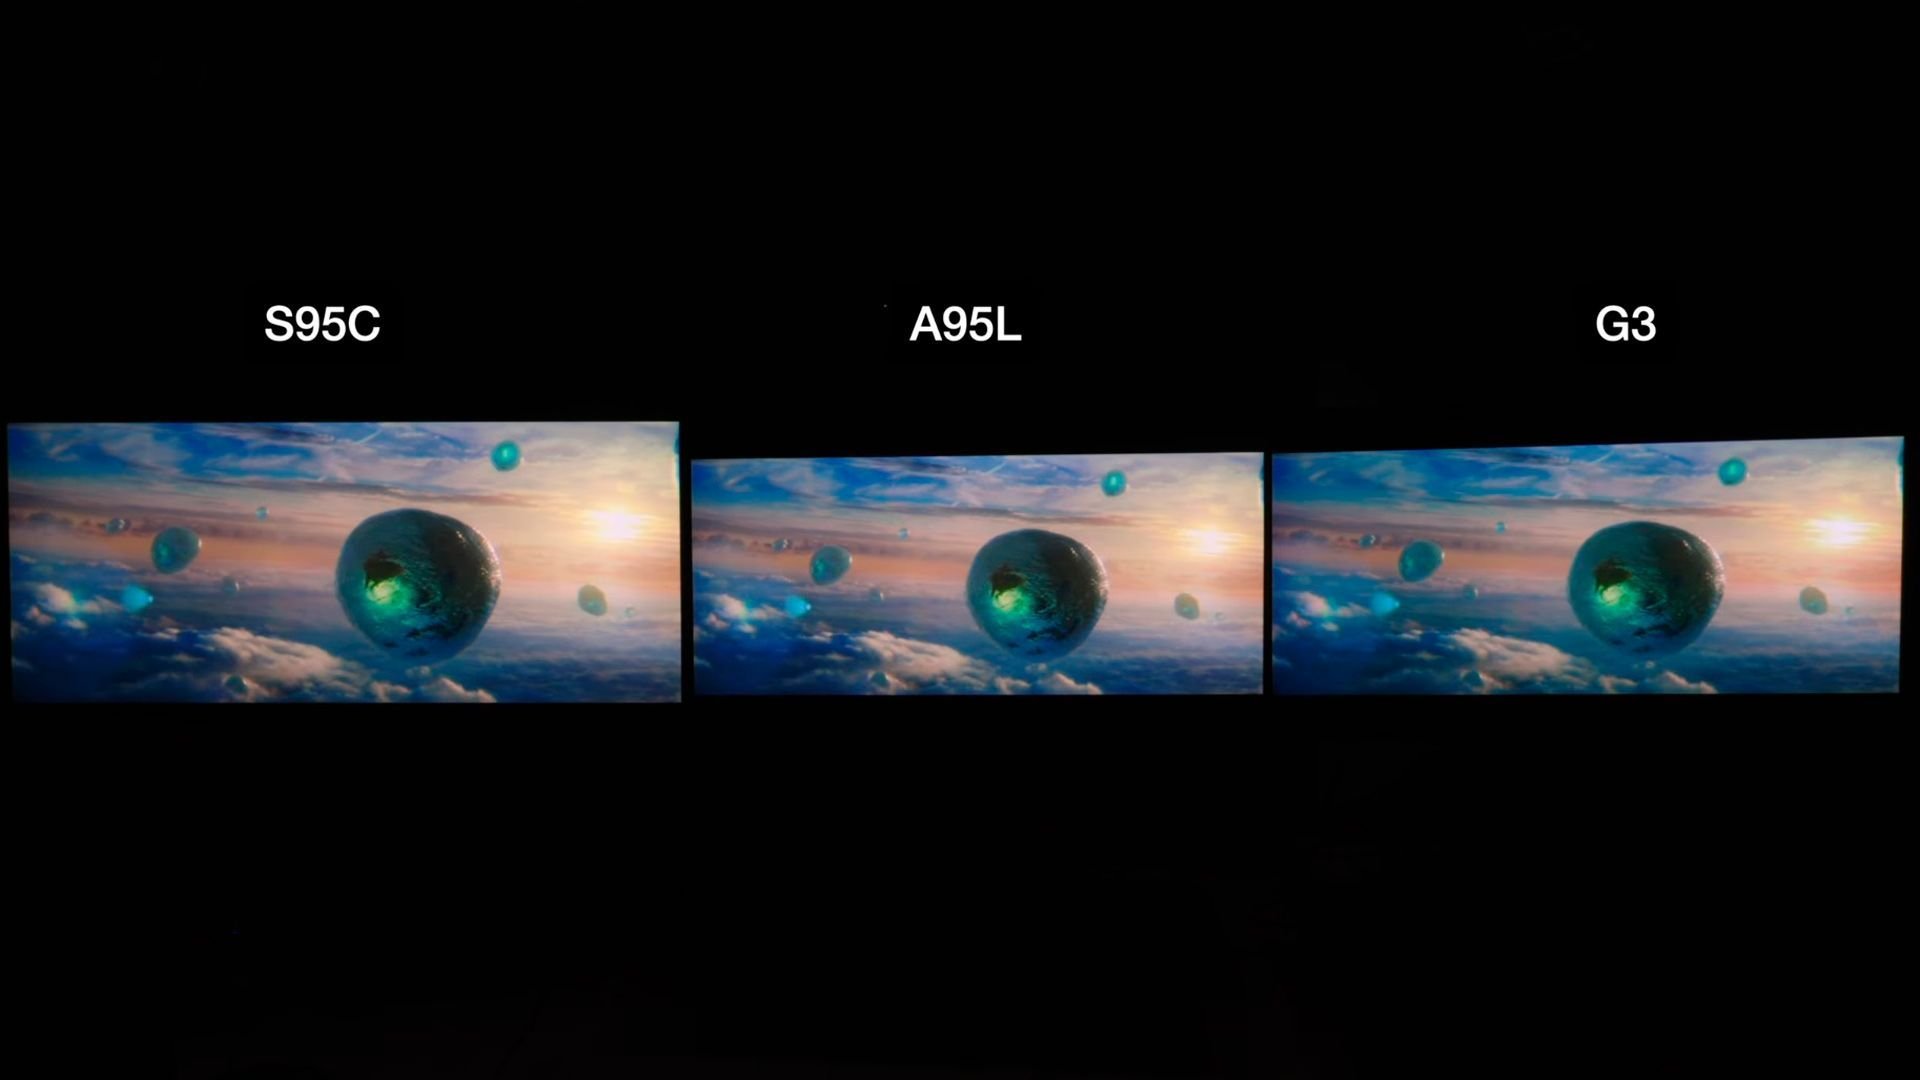 Primeras impresiones de la comparativa entre la Sony A95L vs Samsung S95C vs LG OLED G3